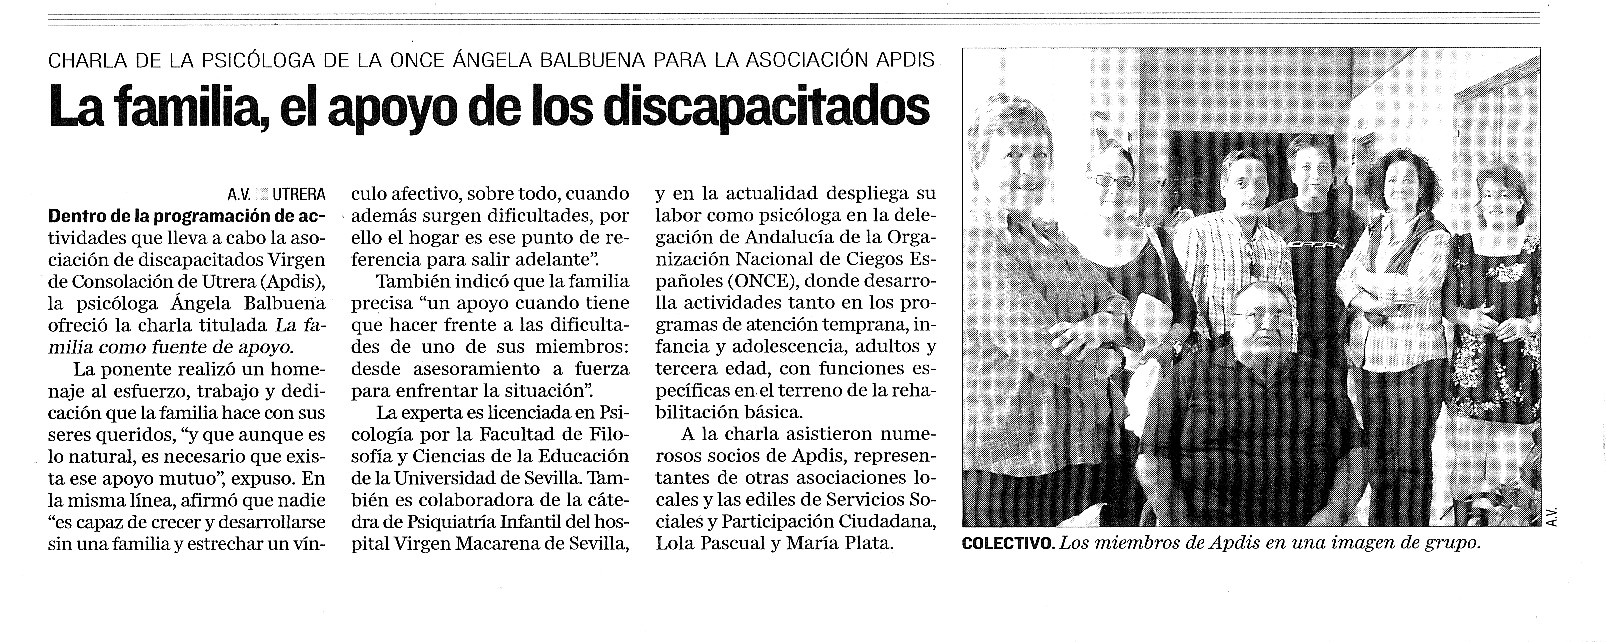 III Jornada APDIS. La Familia apoyo a los discapacitados 9-10-07,EL CORREO ANDALUCÍA